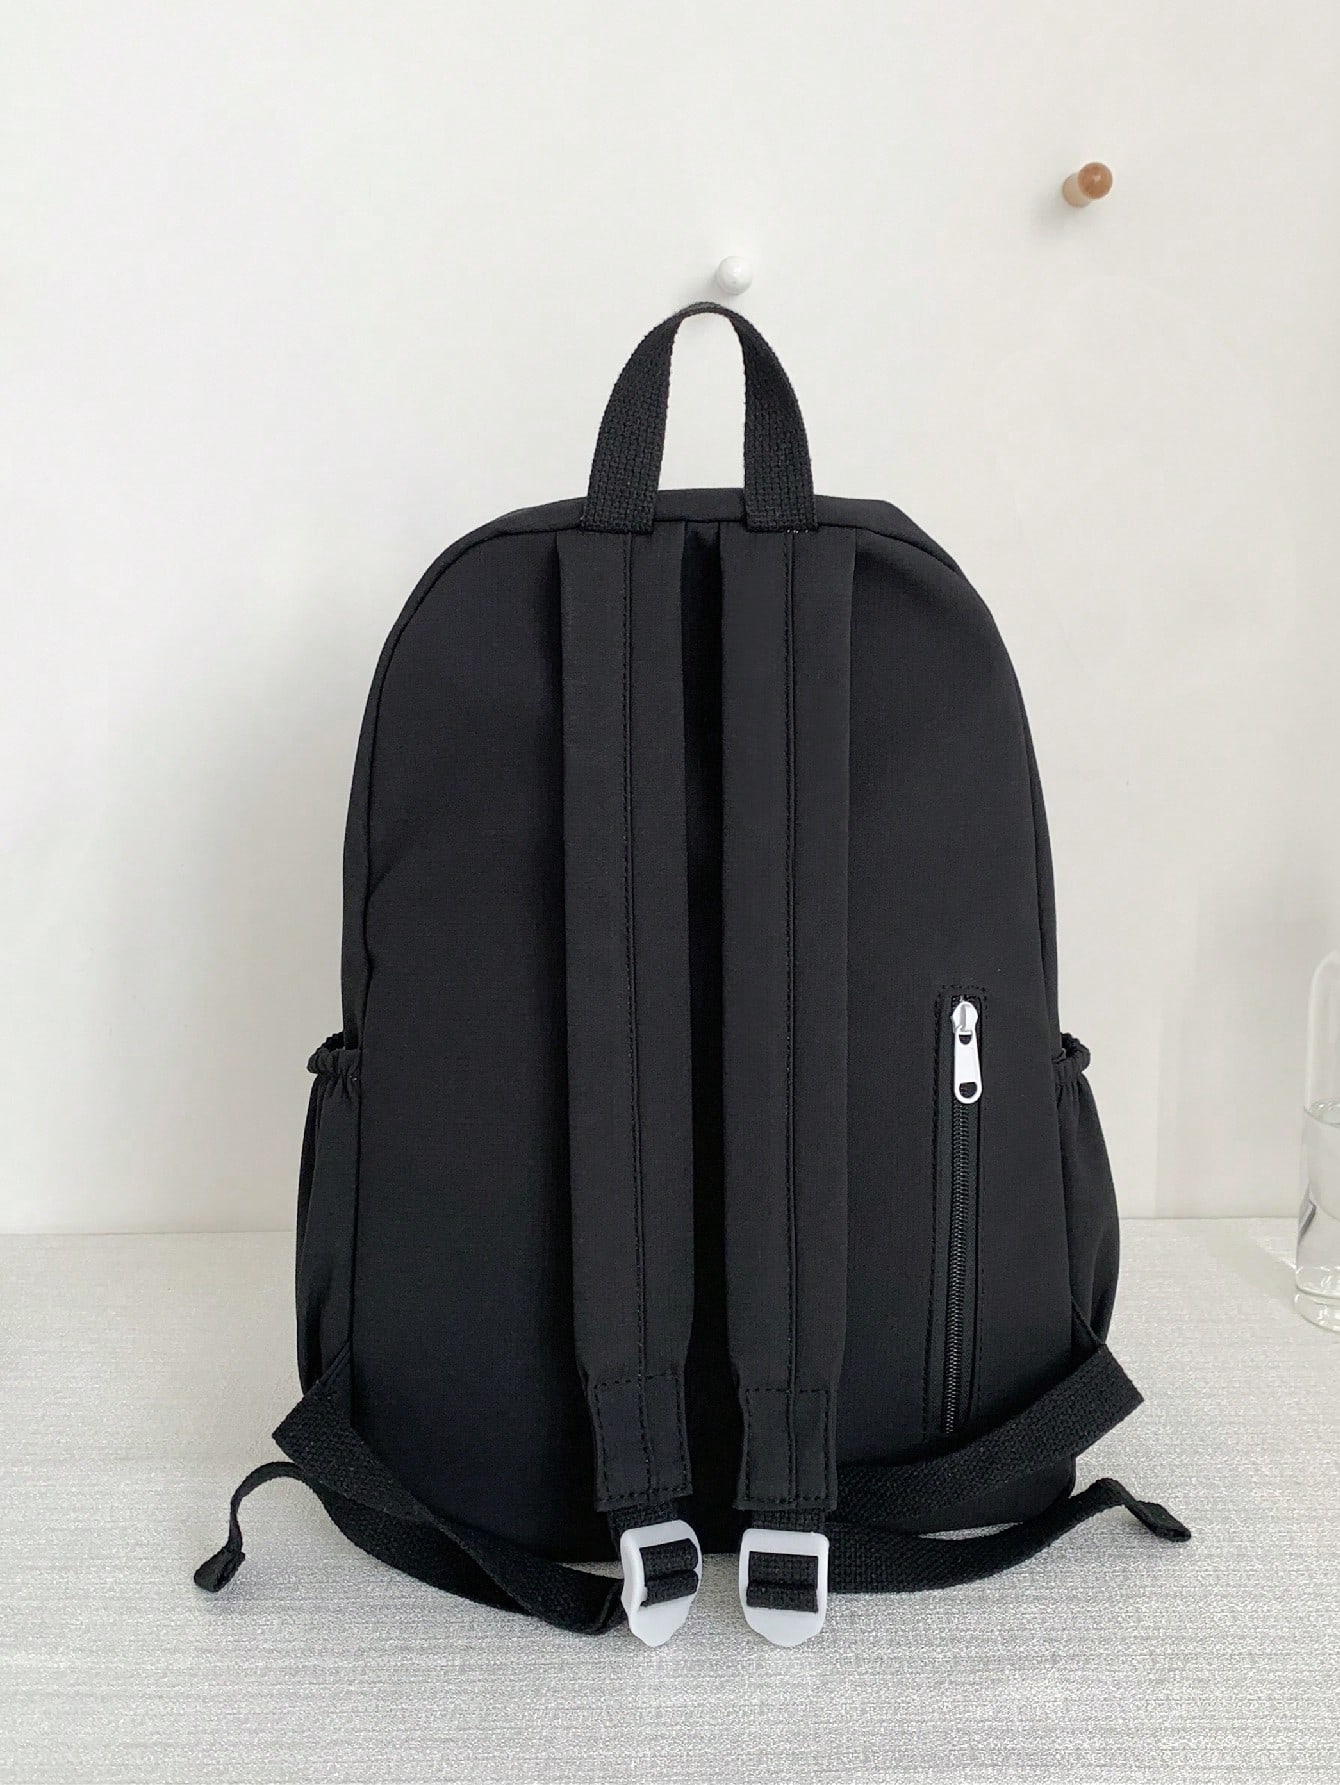 Модный однотонный классический рюкзак с несколькими карманами в стиле колледжа для повседневного использования, черный холщовый рюкзак на шнурке модный школьный рюкзак повседневный рюкзак на шнурке школьный рюкзак для девочек подростков